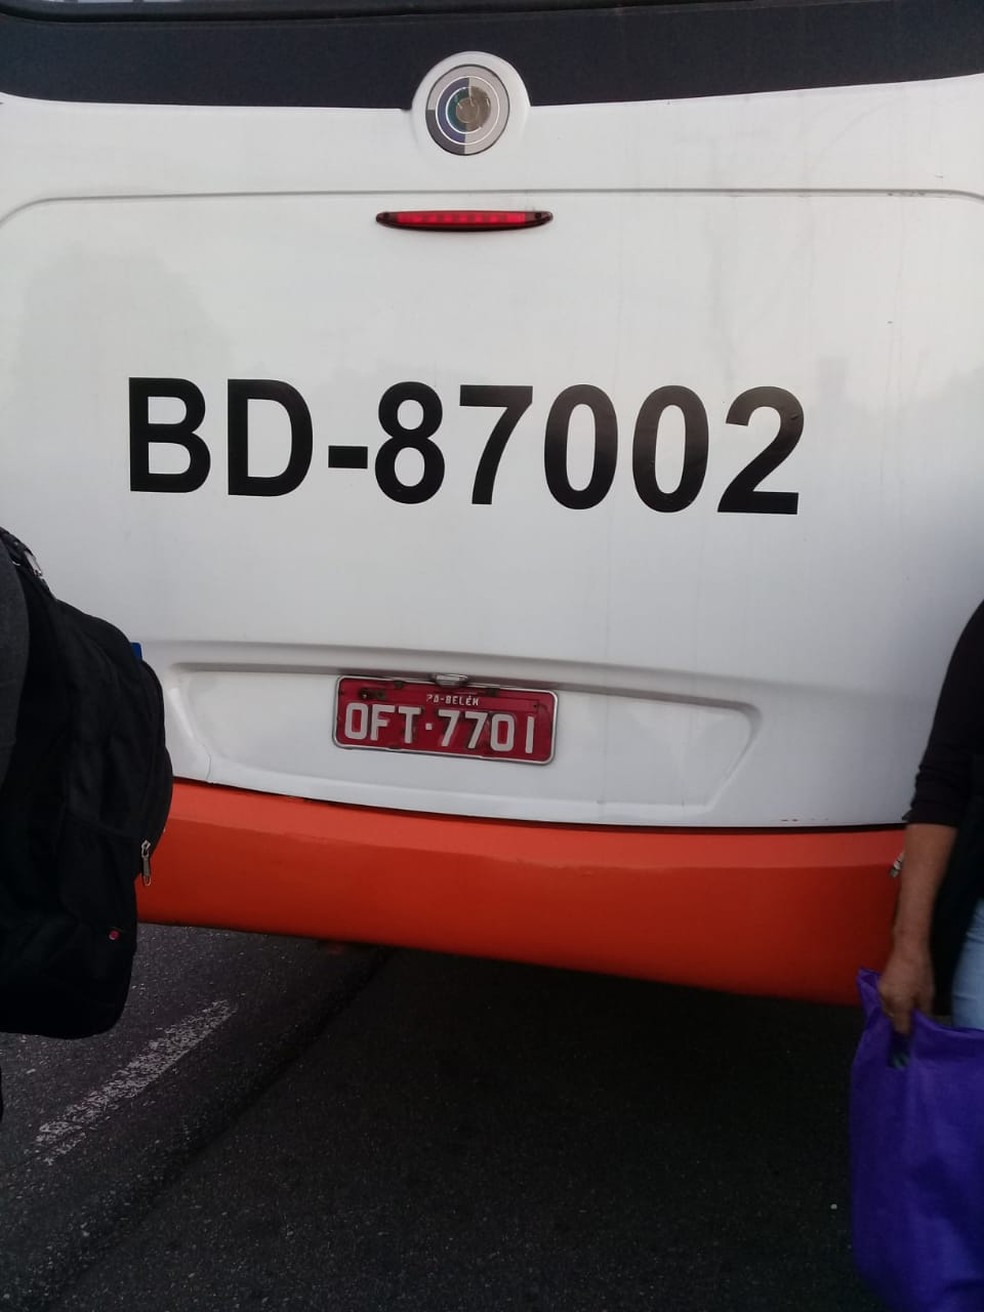 Passageiros são transferidos para este terceiro ônibus  (Foto: Luiz Cláudio Fernandes)